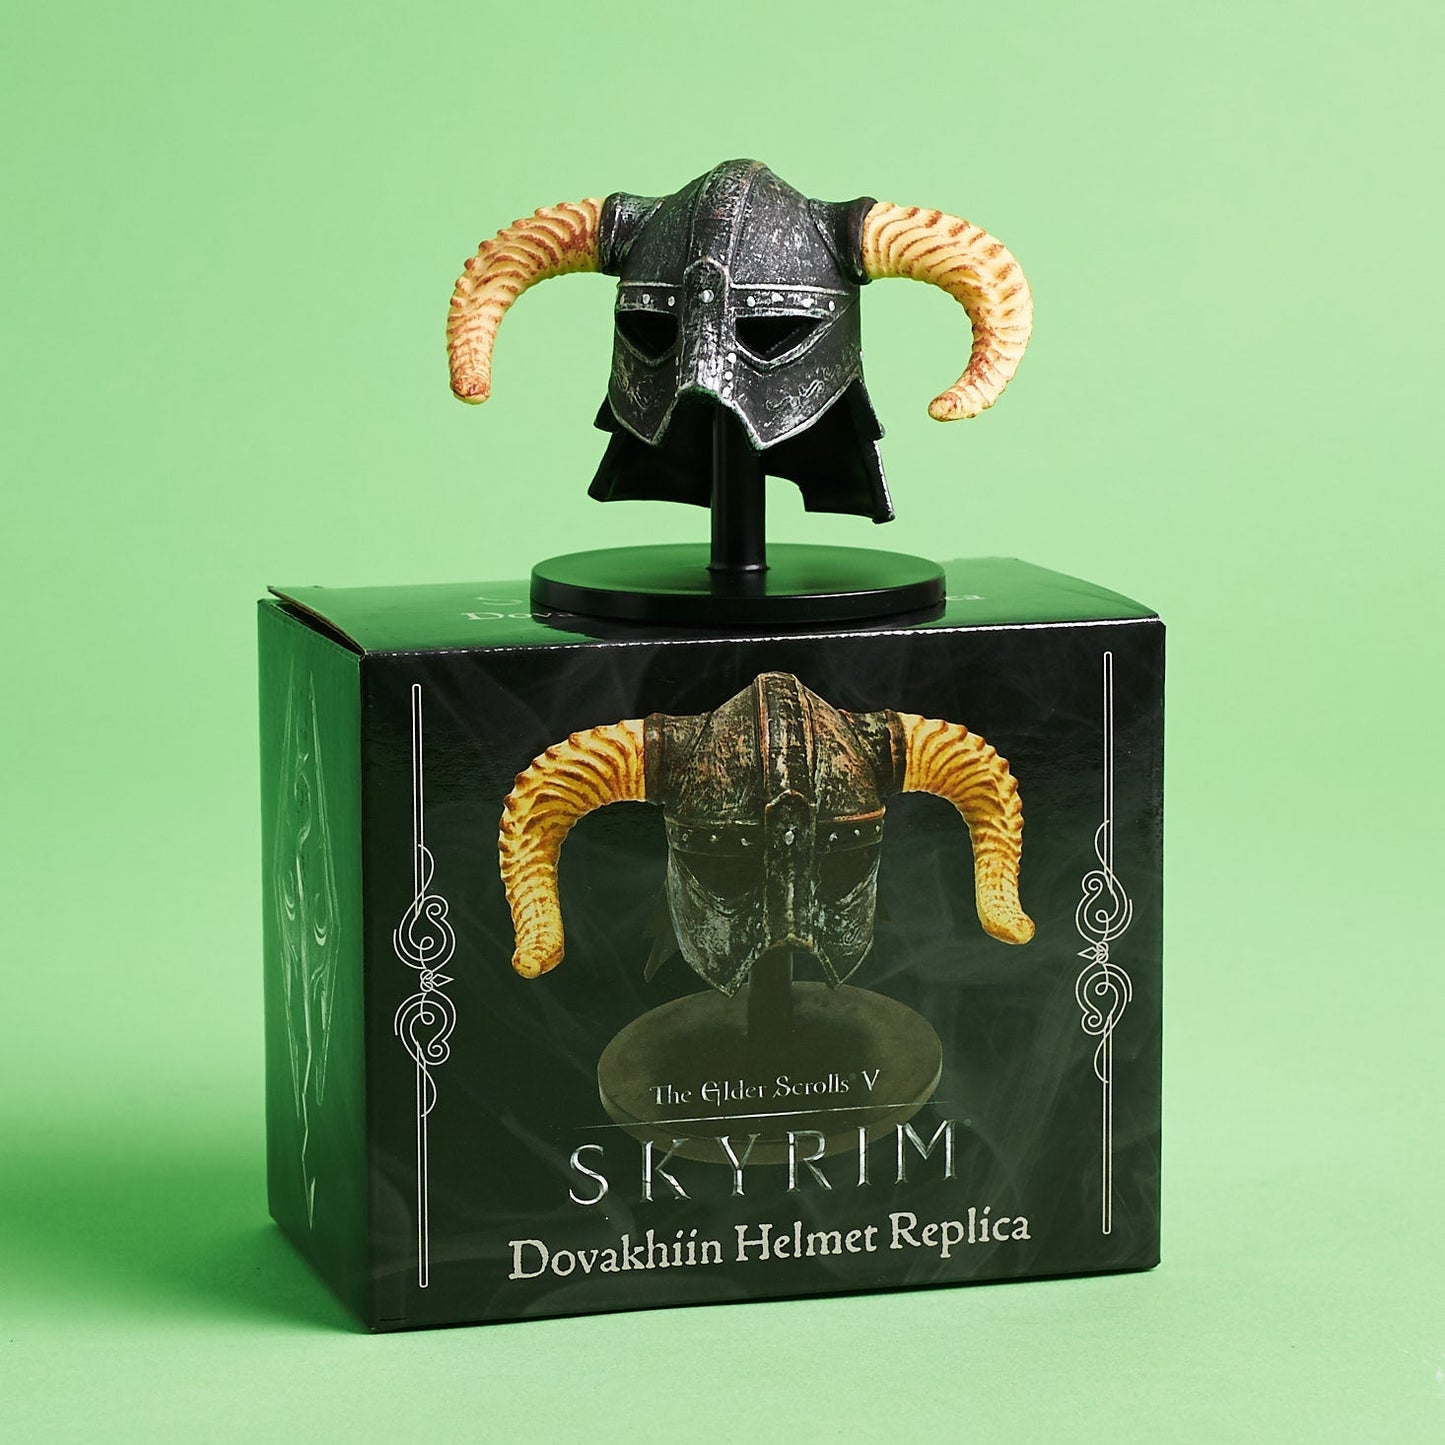 The Elder Scrolls V: Skyrim Dovahkiin Helmet Collectible Figure 3D Standee